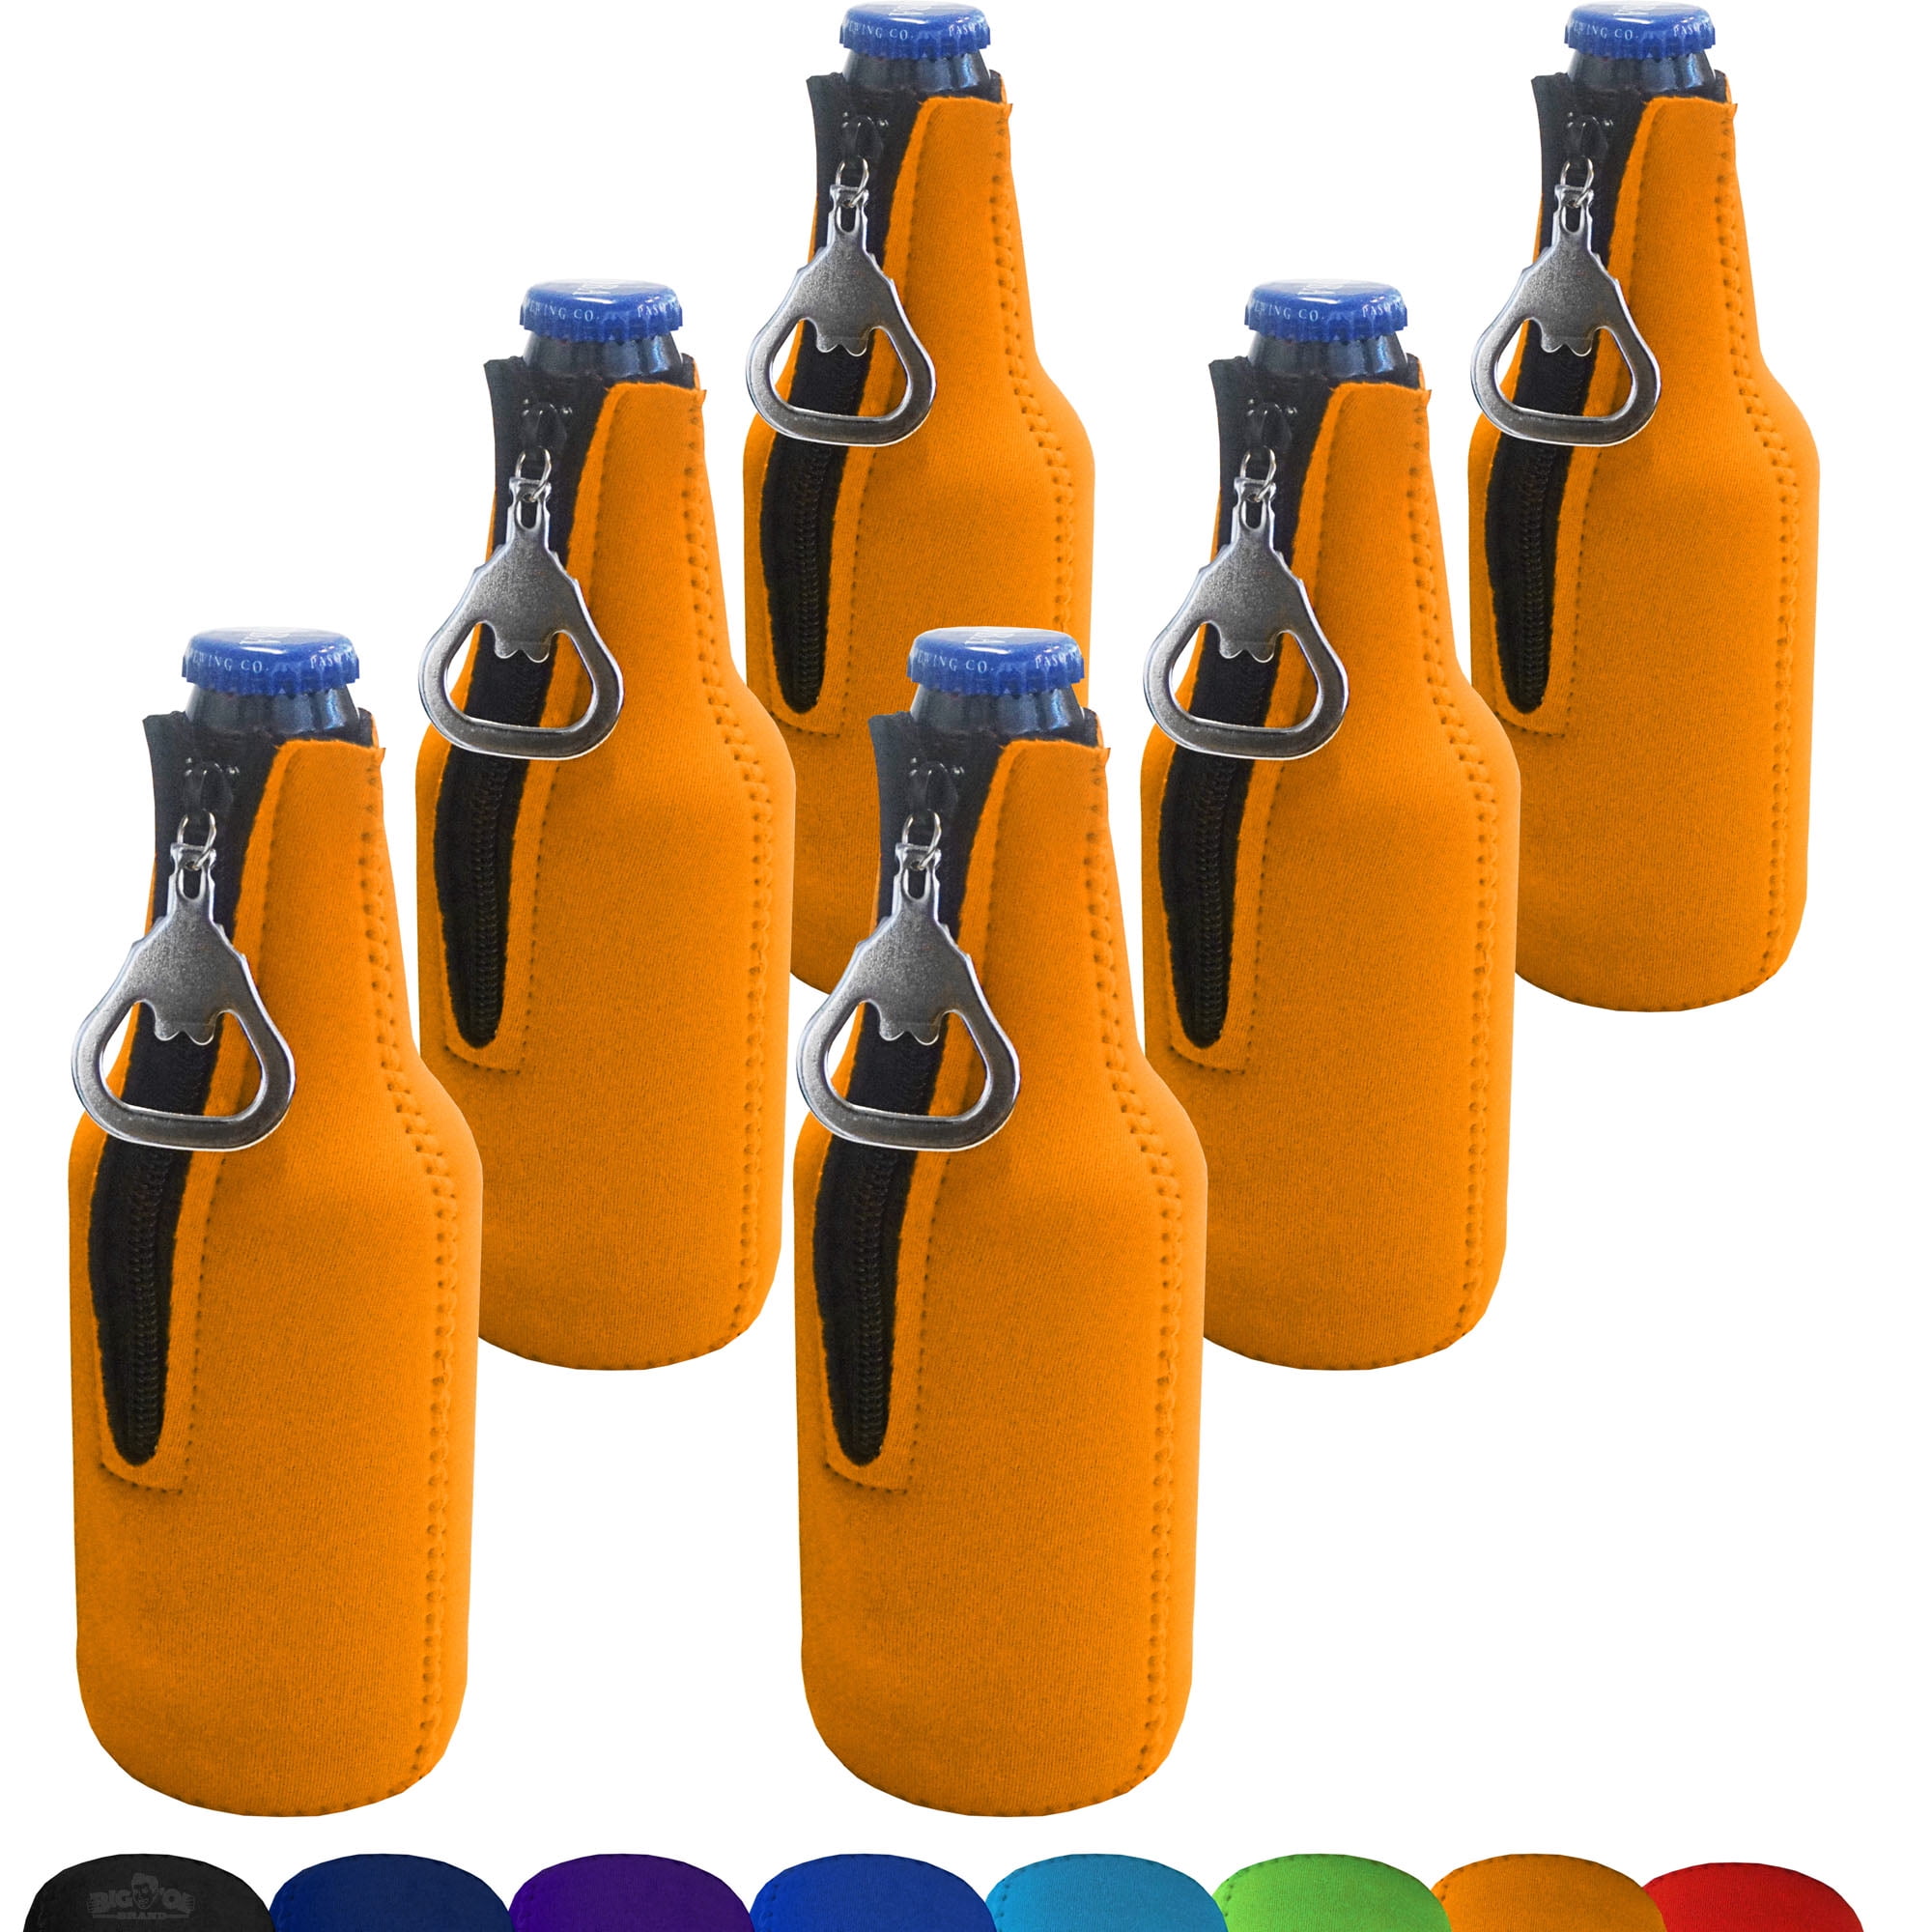 Koozie® Bottle Cooler with Removable Bottle Opener